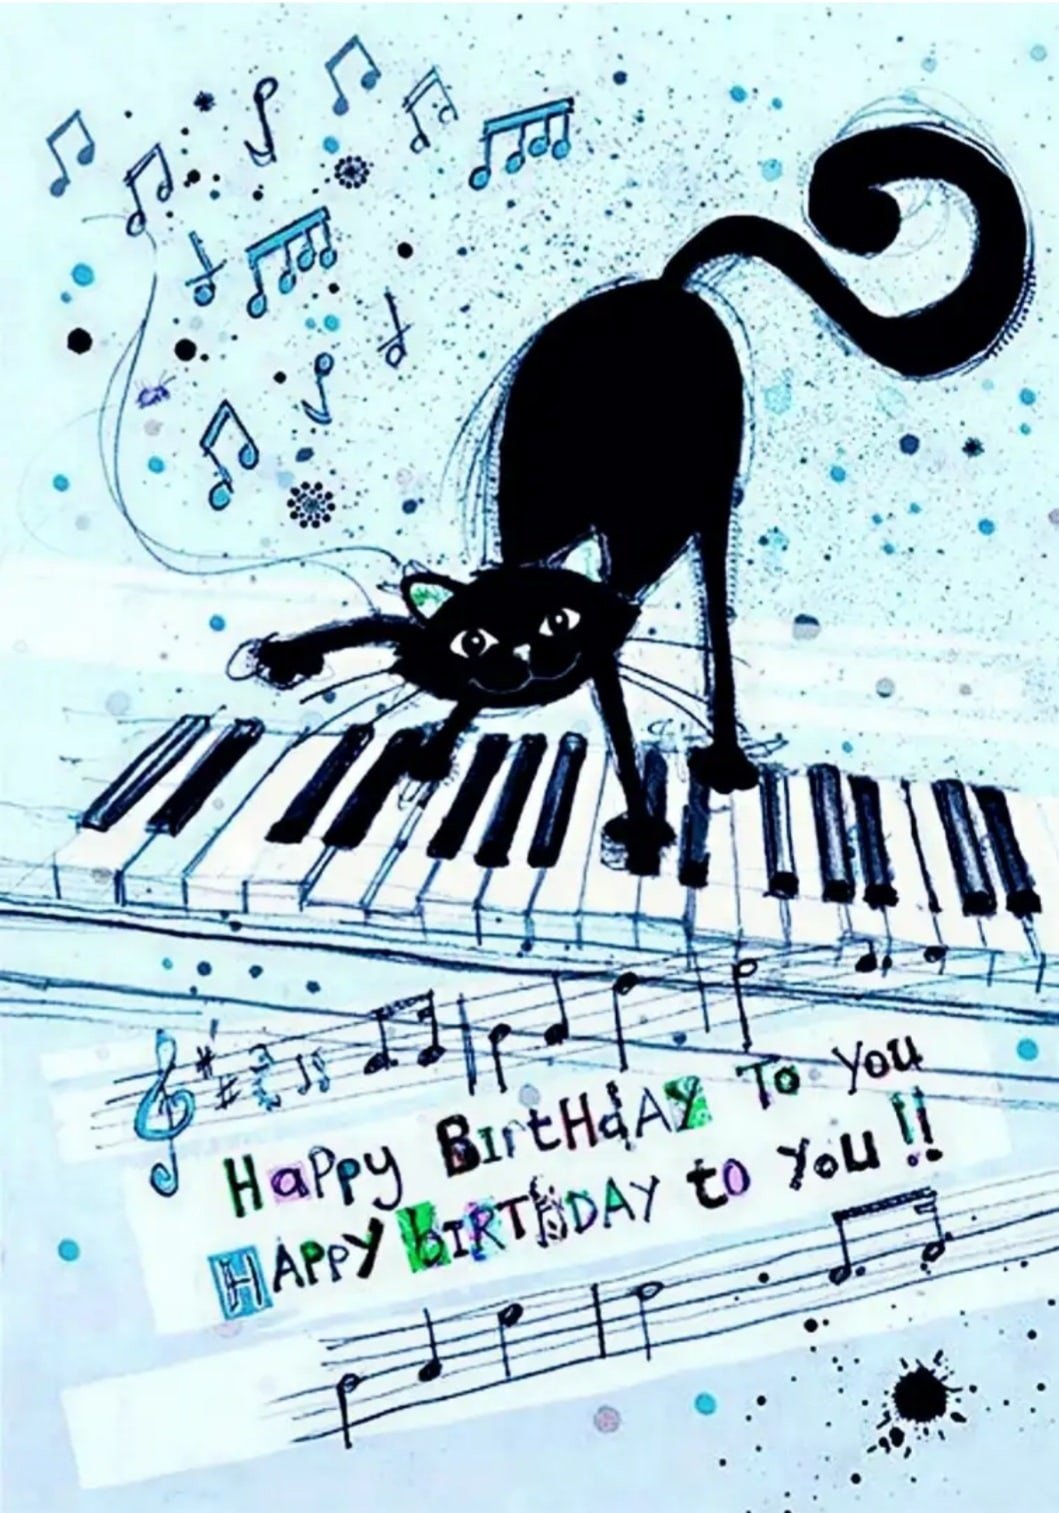 День рождения кота песня. Поздравление музыканту. Музыкальная тематика. С днём рождения музыканту. Открытка музыканту.